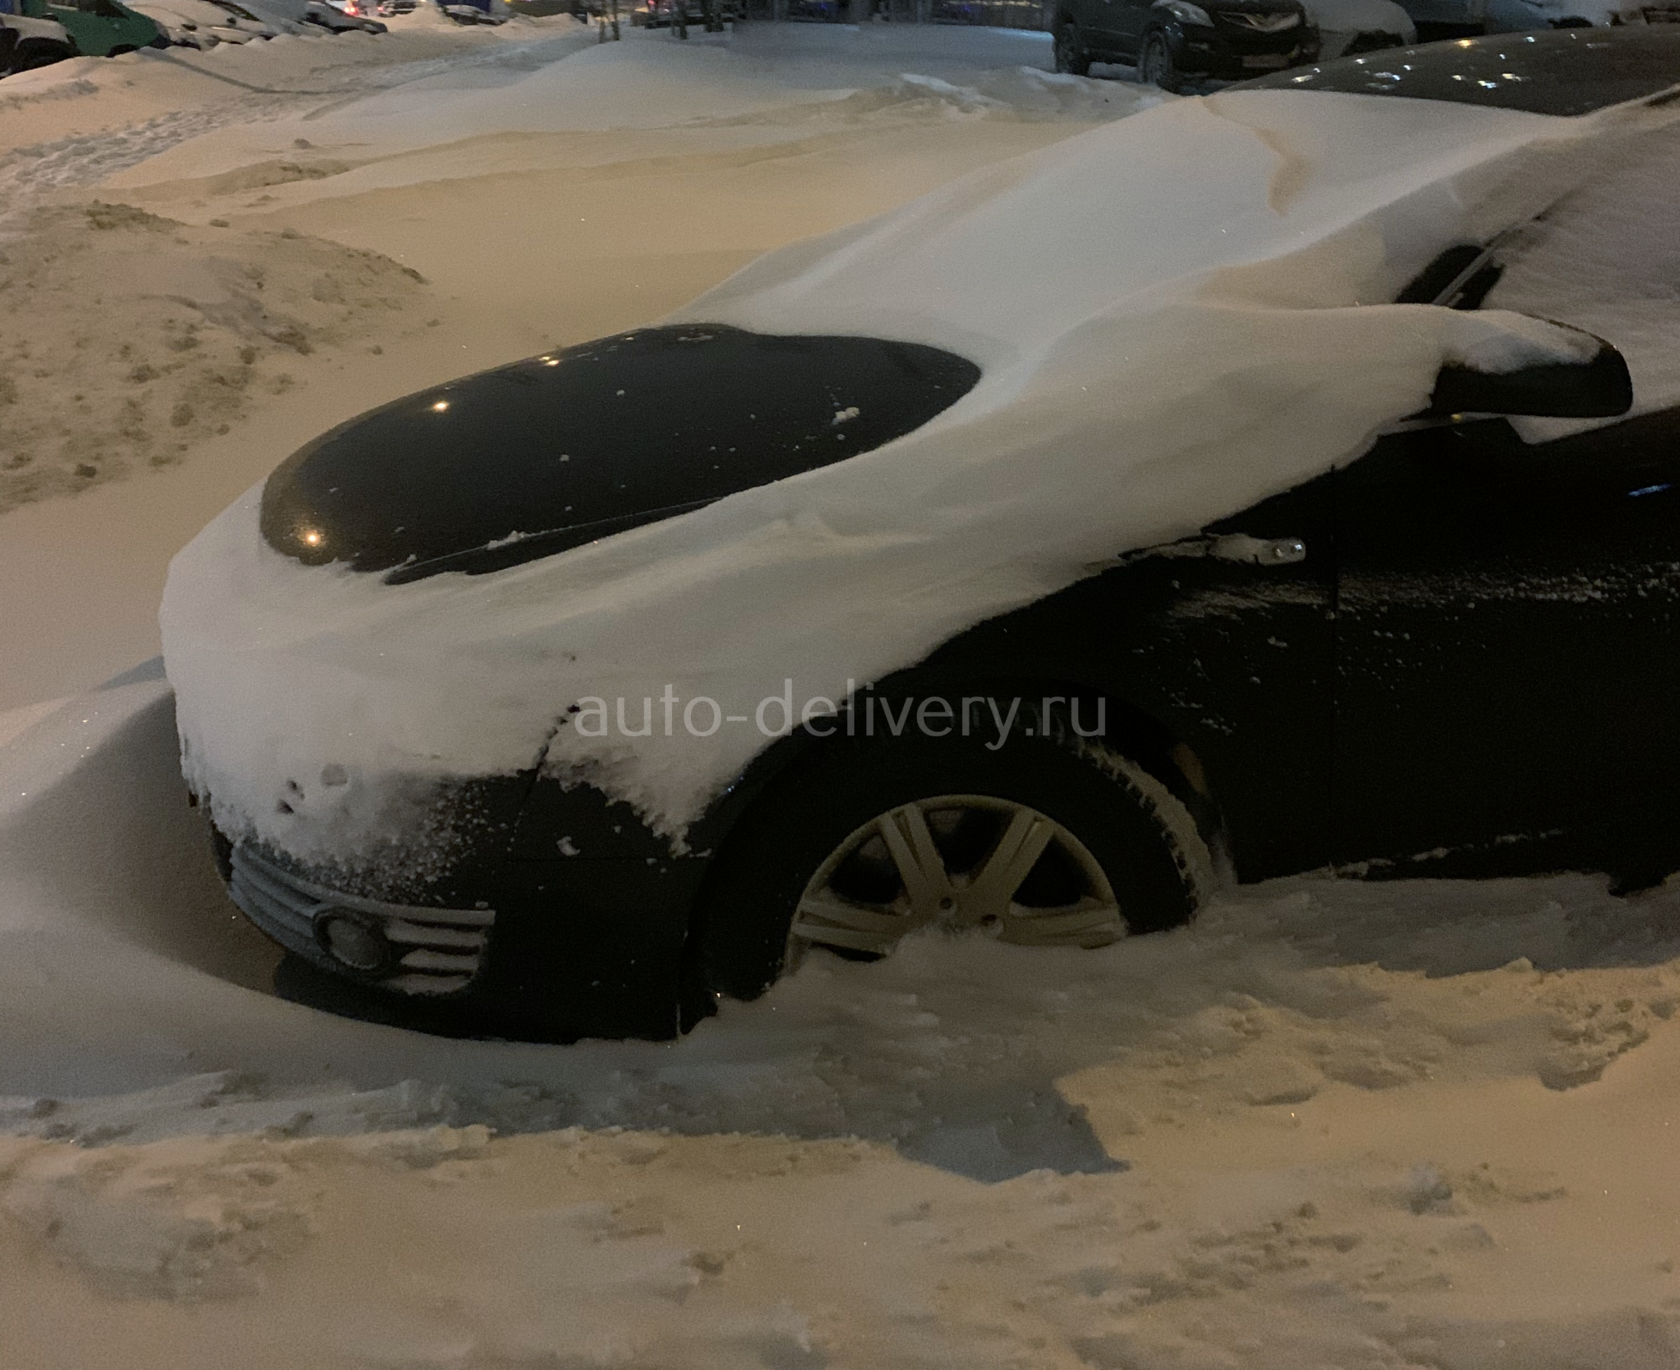 машины в москве завалило снегом